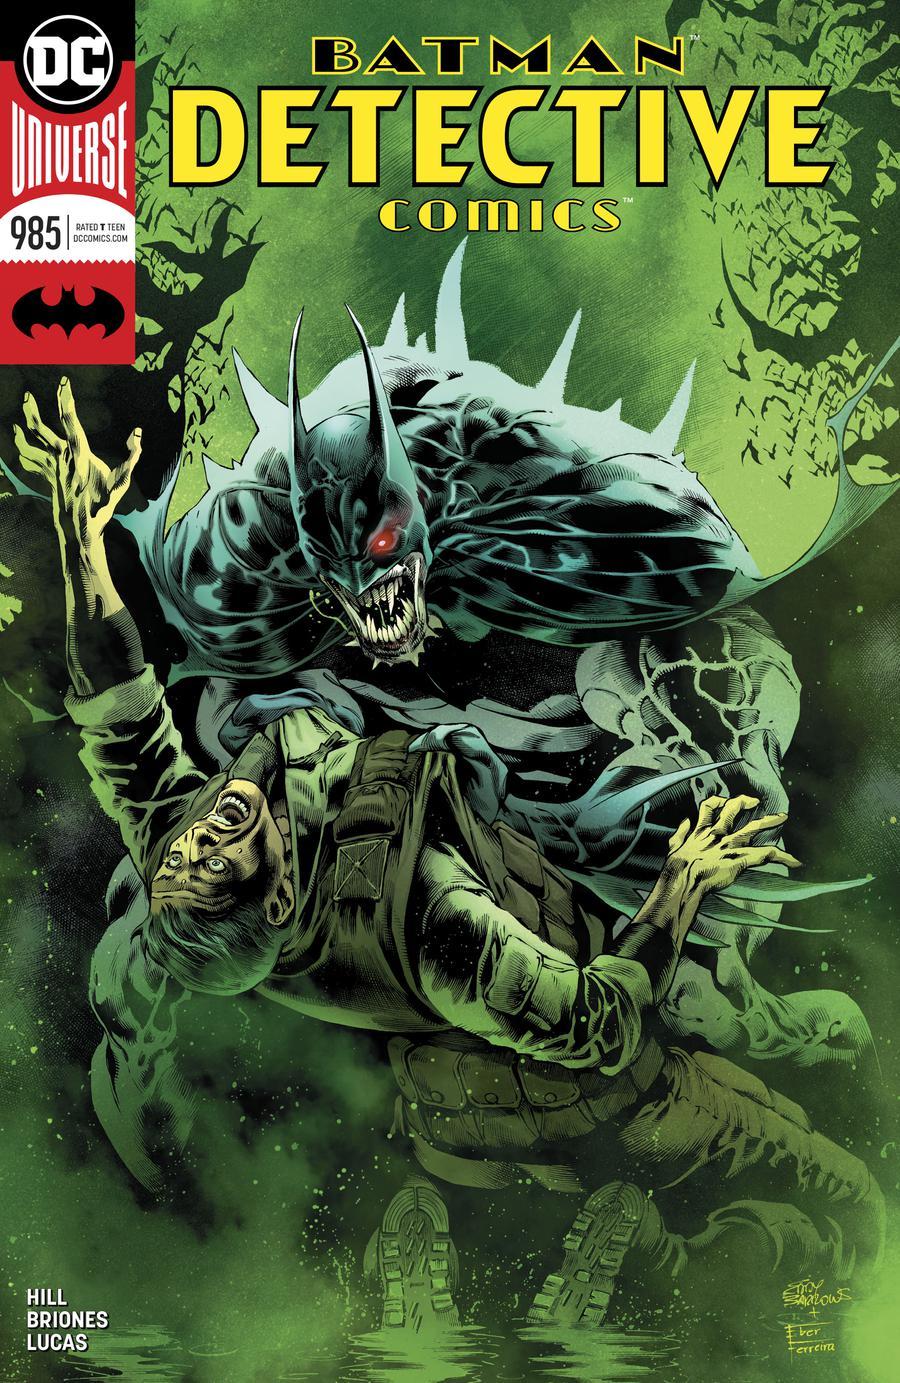 Detective Comics Vol. 2 #985